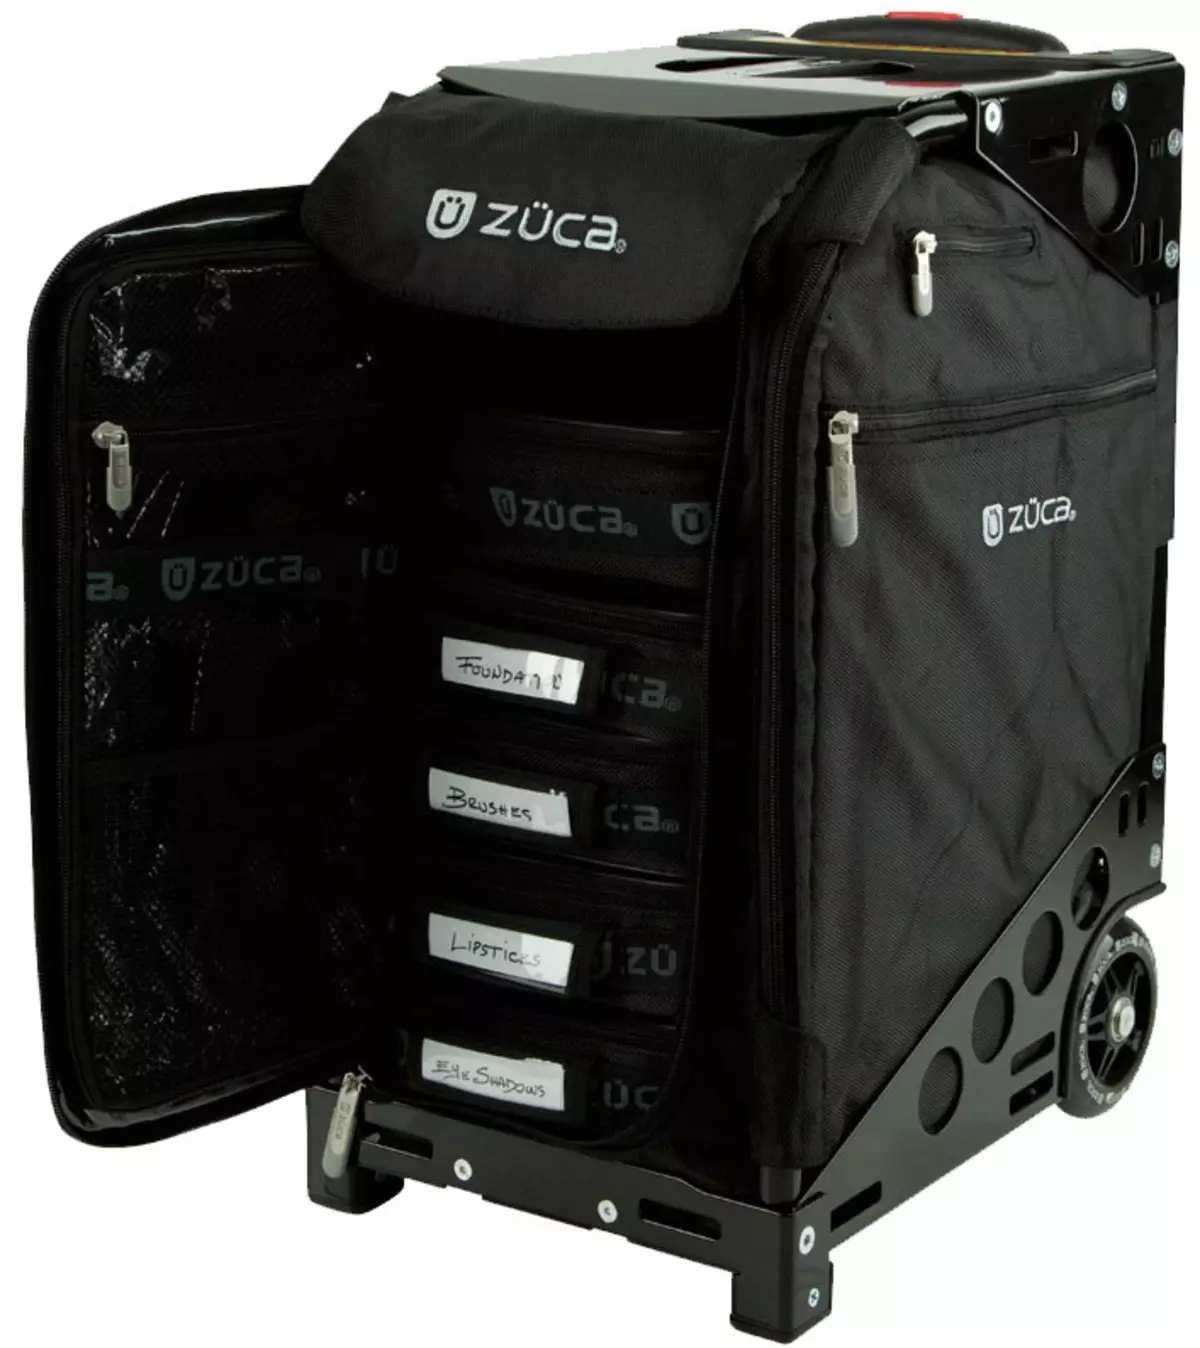 Cases de cosméticos (60 fotos): maletas sobre rodas, bolsas e outros almacenamento de cosméticos de beleza. Elección de casos cosméticos profesionais 4364_55